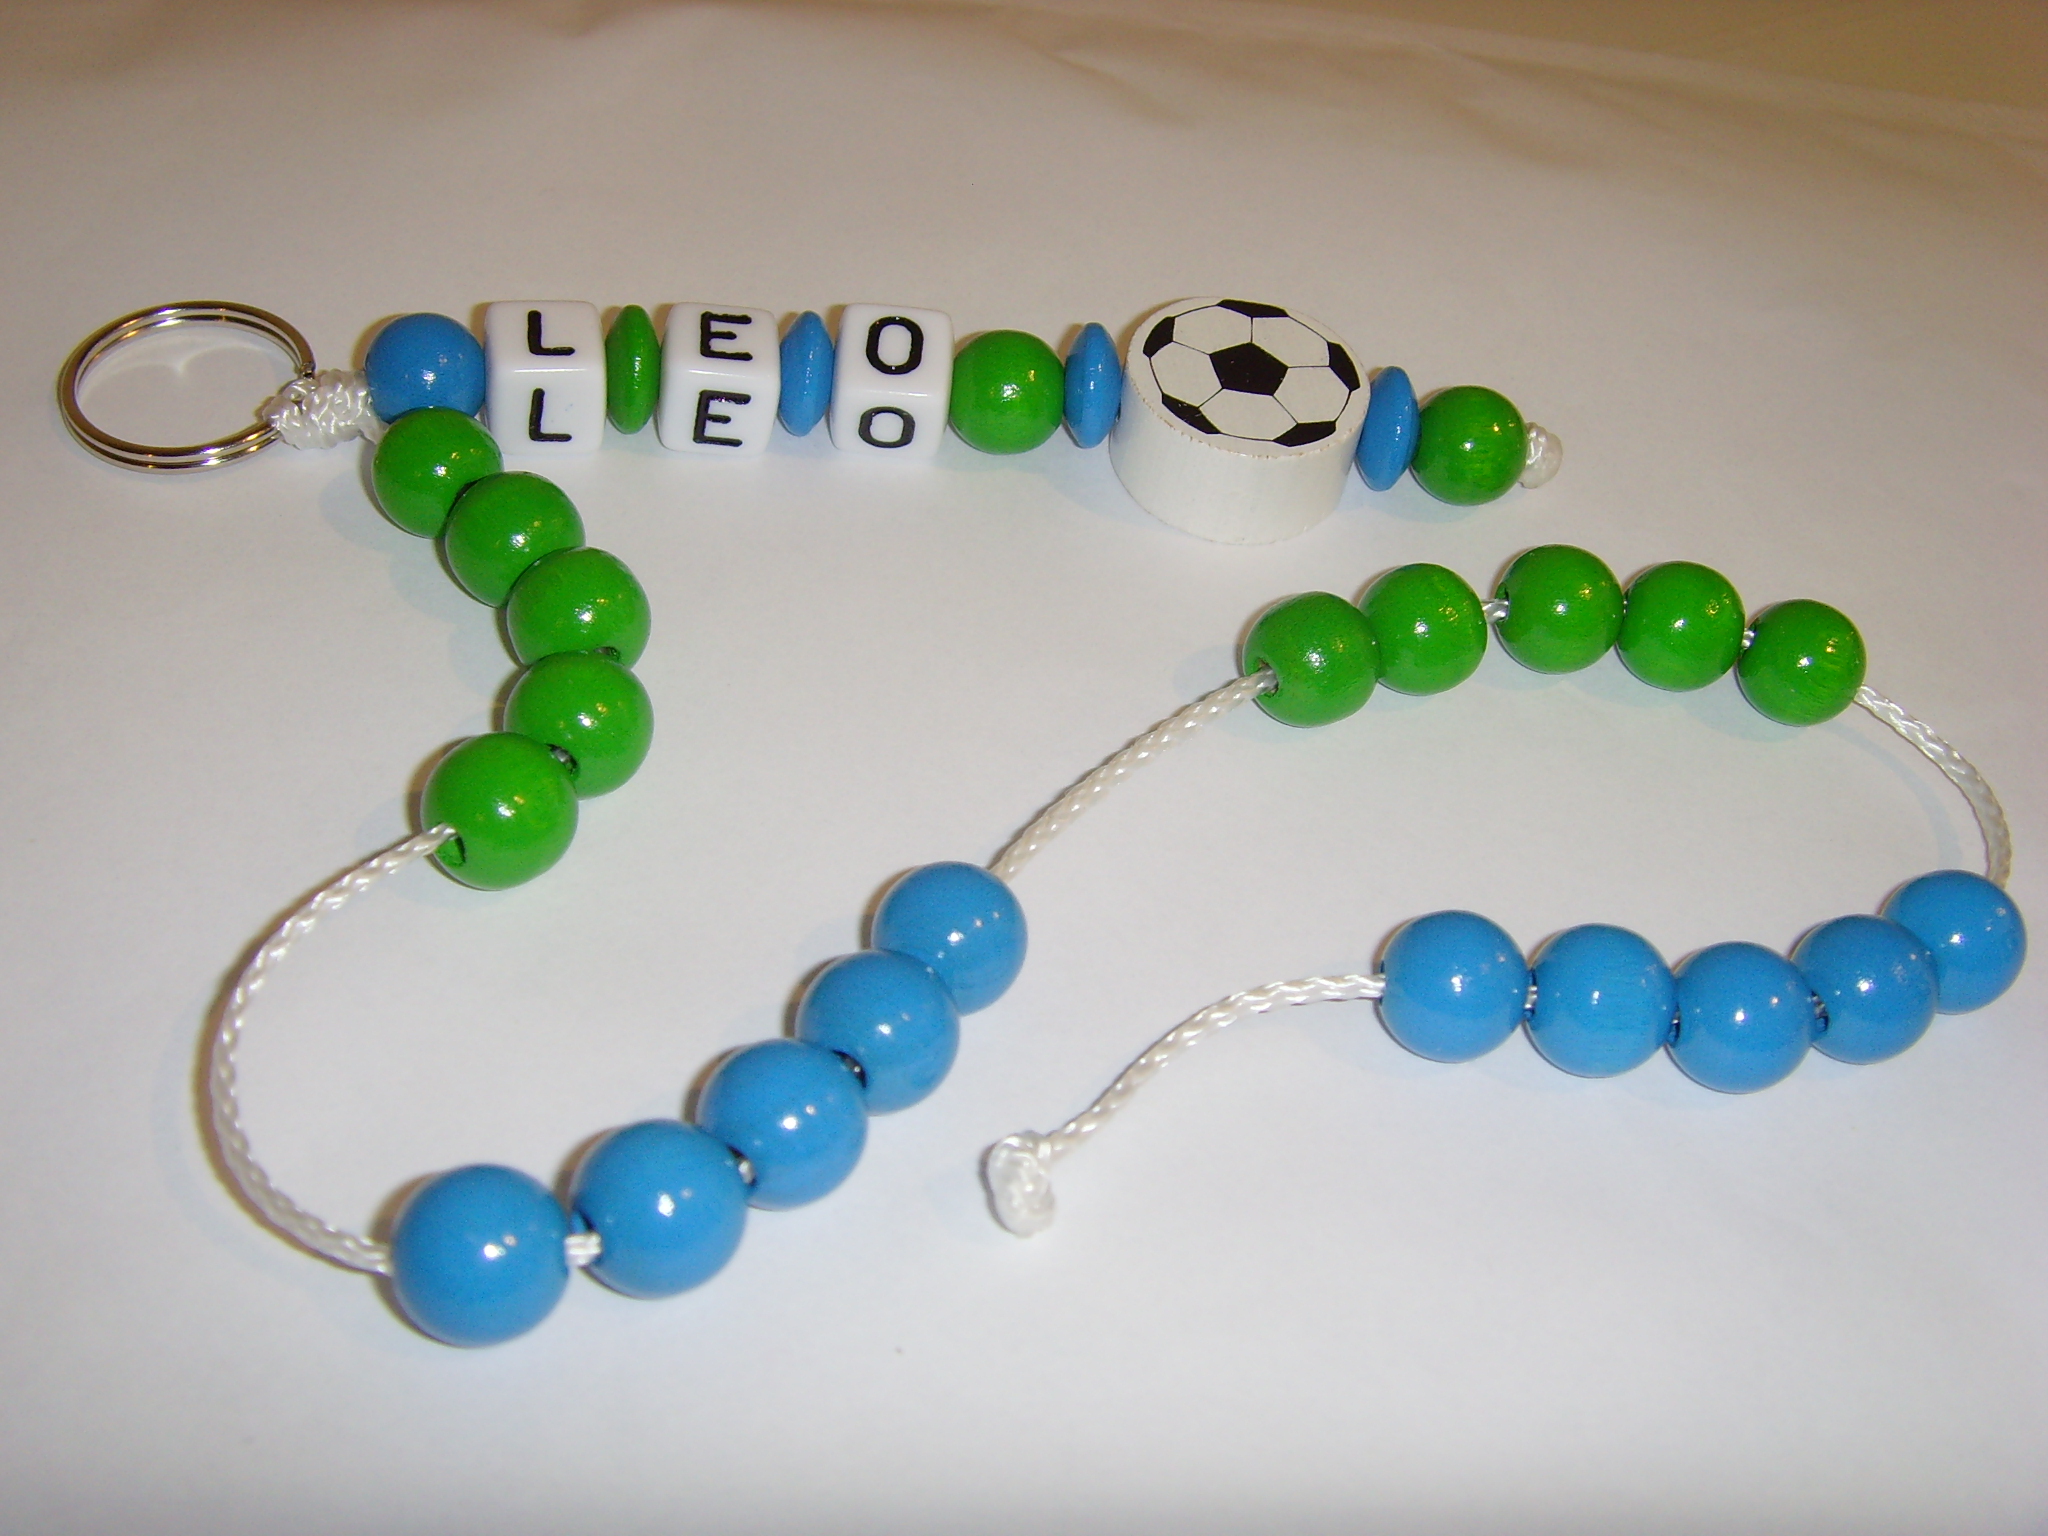 Rechenkette mit Namen - Fußball in blau grün